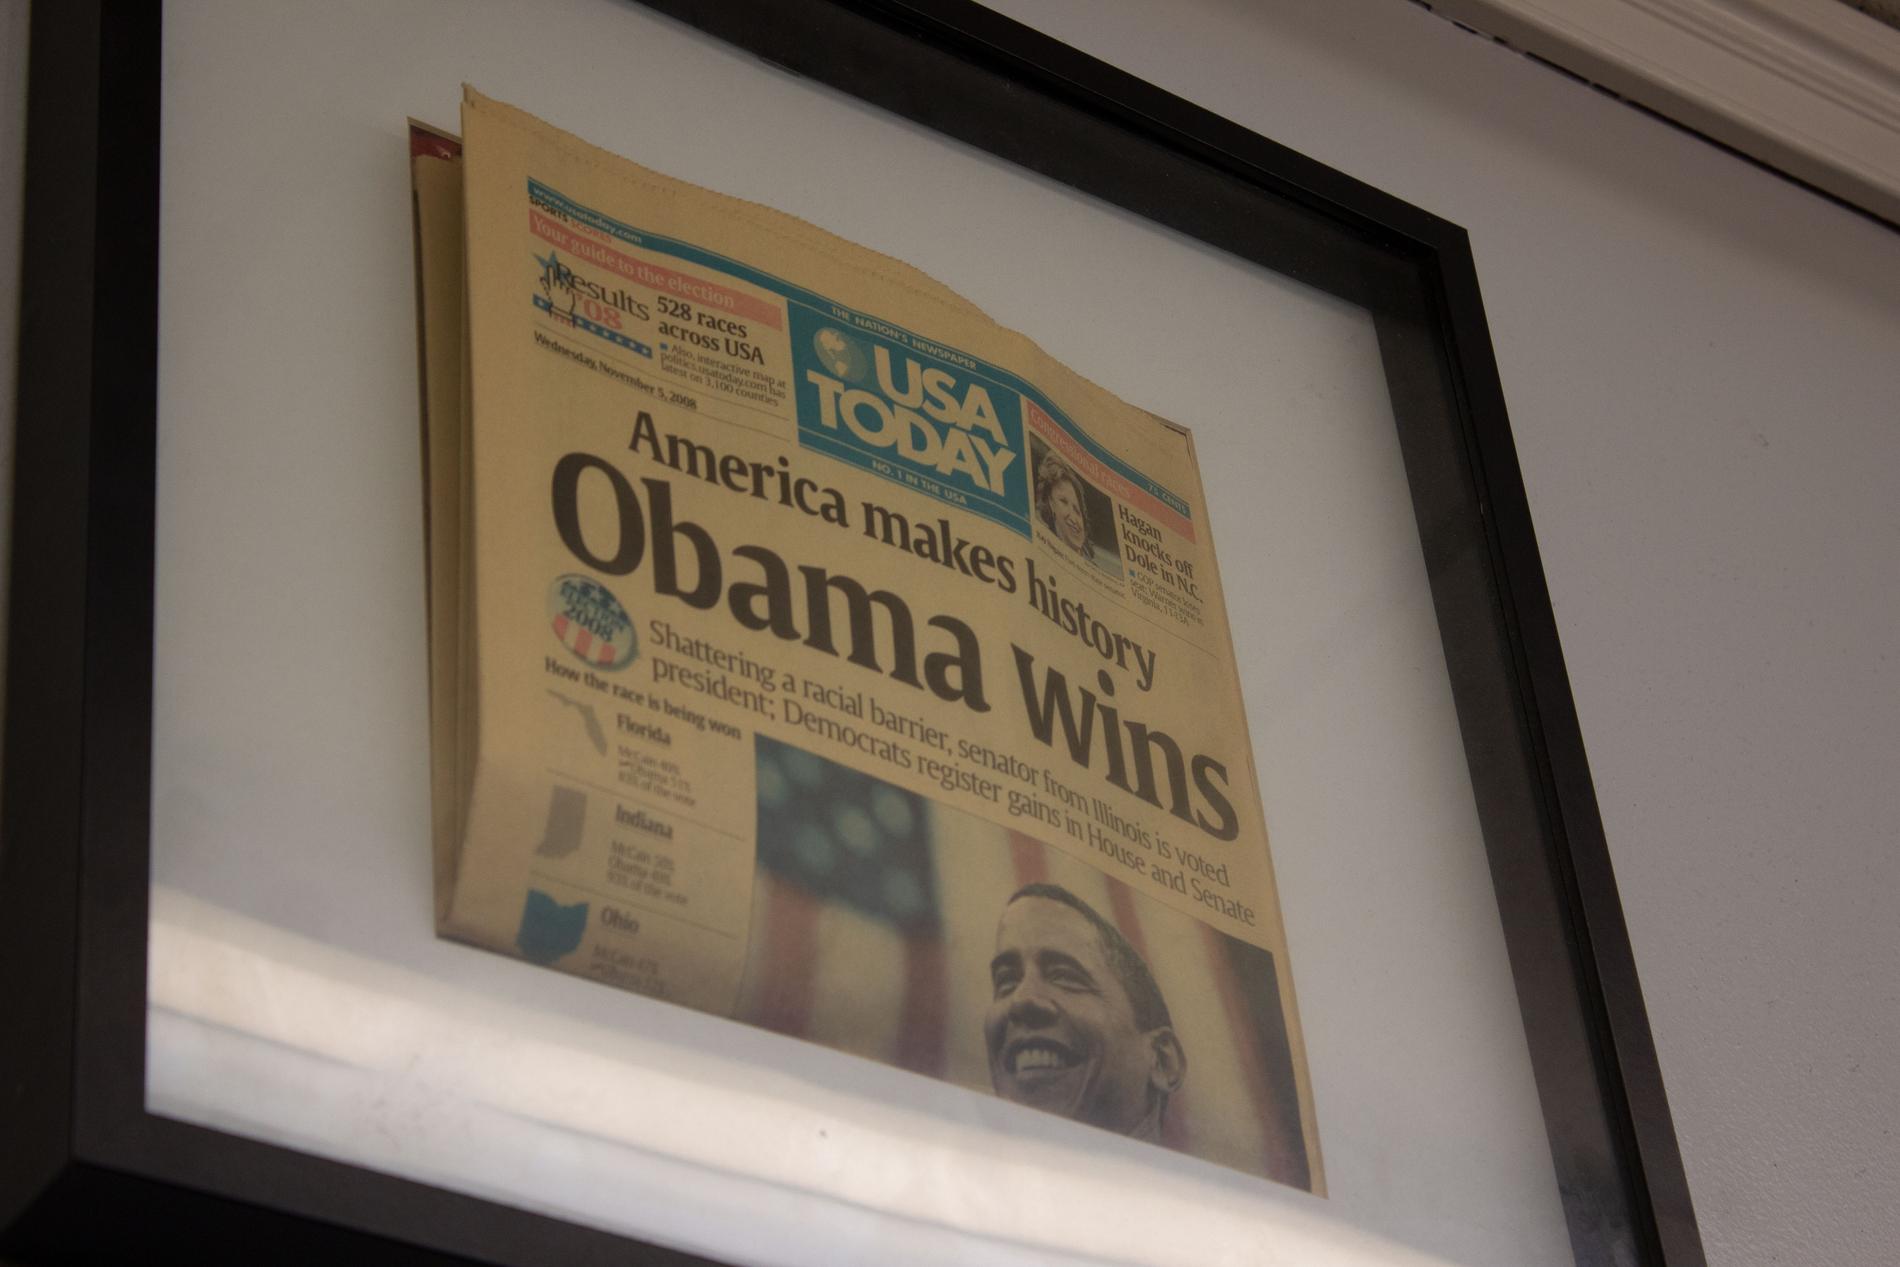 På väggen hänger förstasidan av tidningen från dagen då Obama vann presidentvalet.